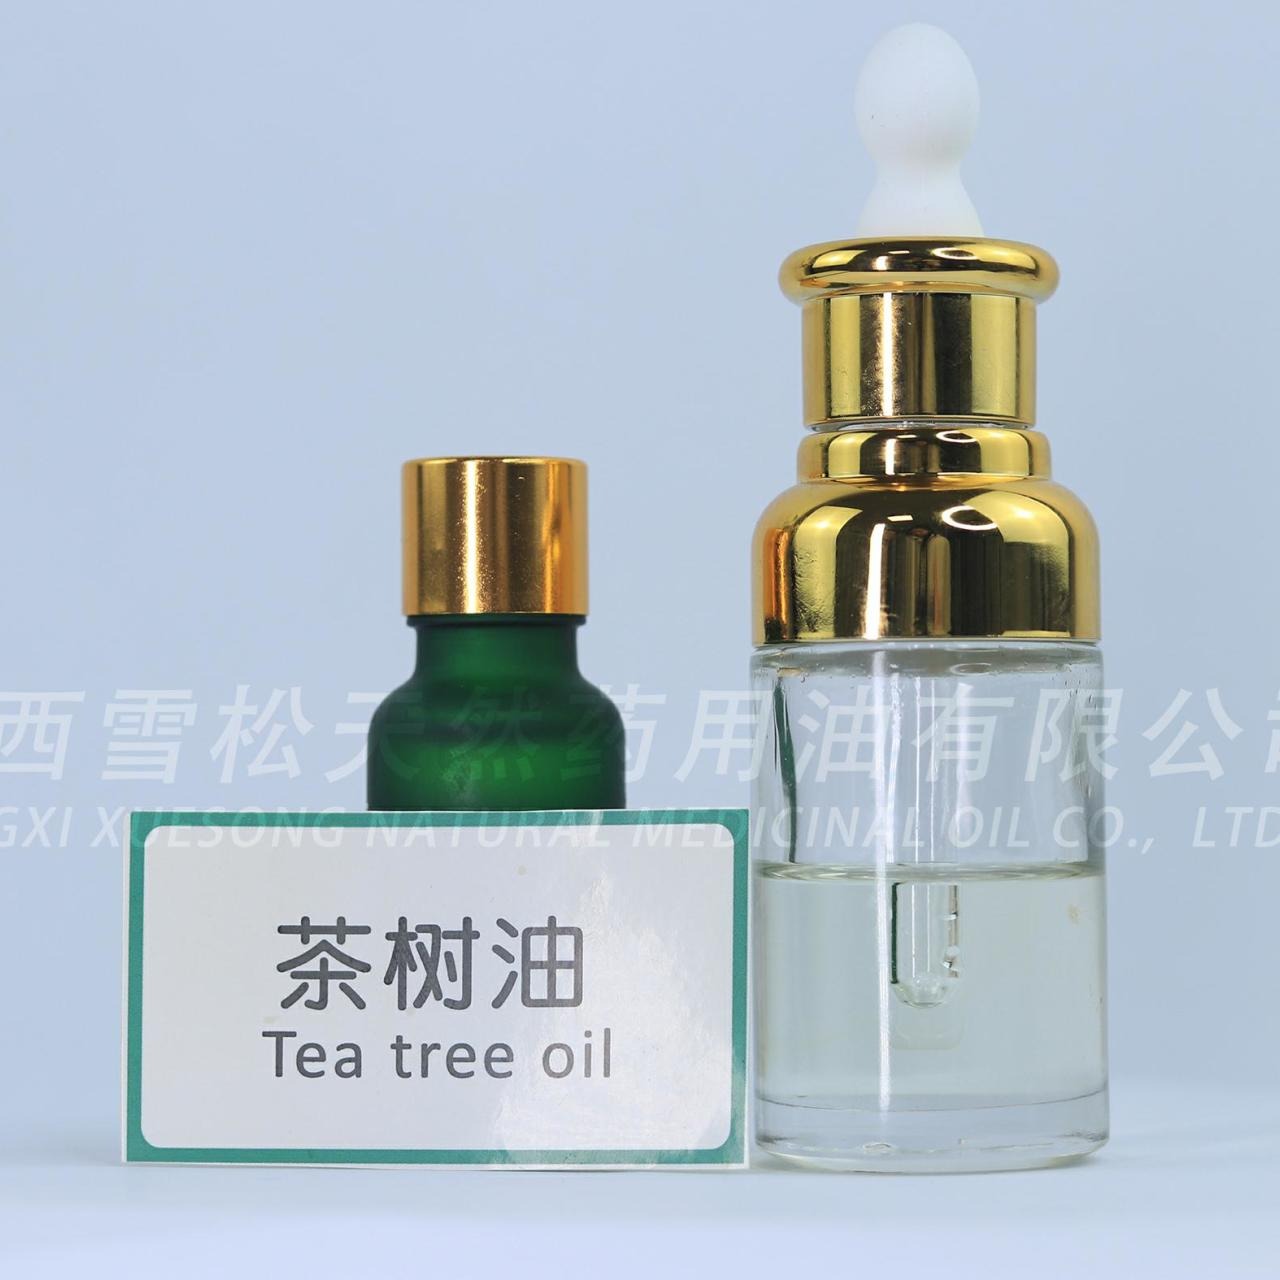 茶树精油 - 北京华宝回春生物科技有限公司